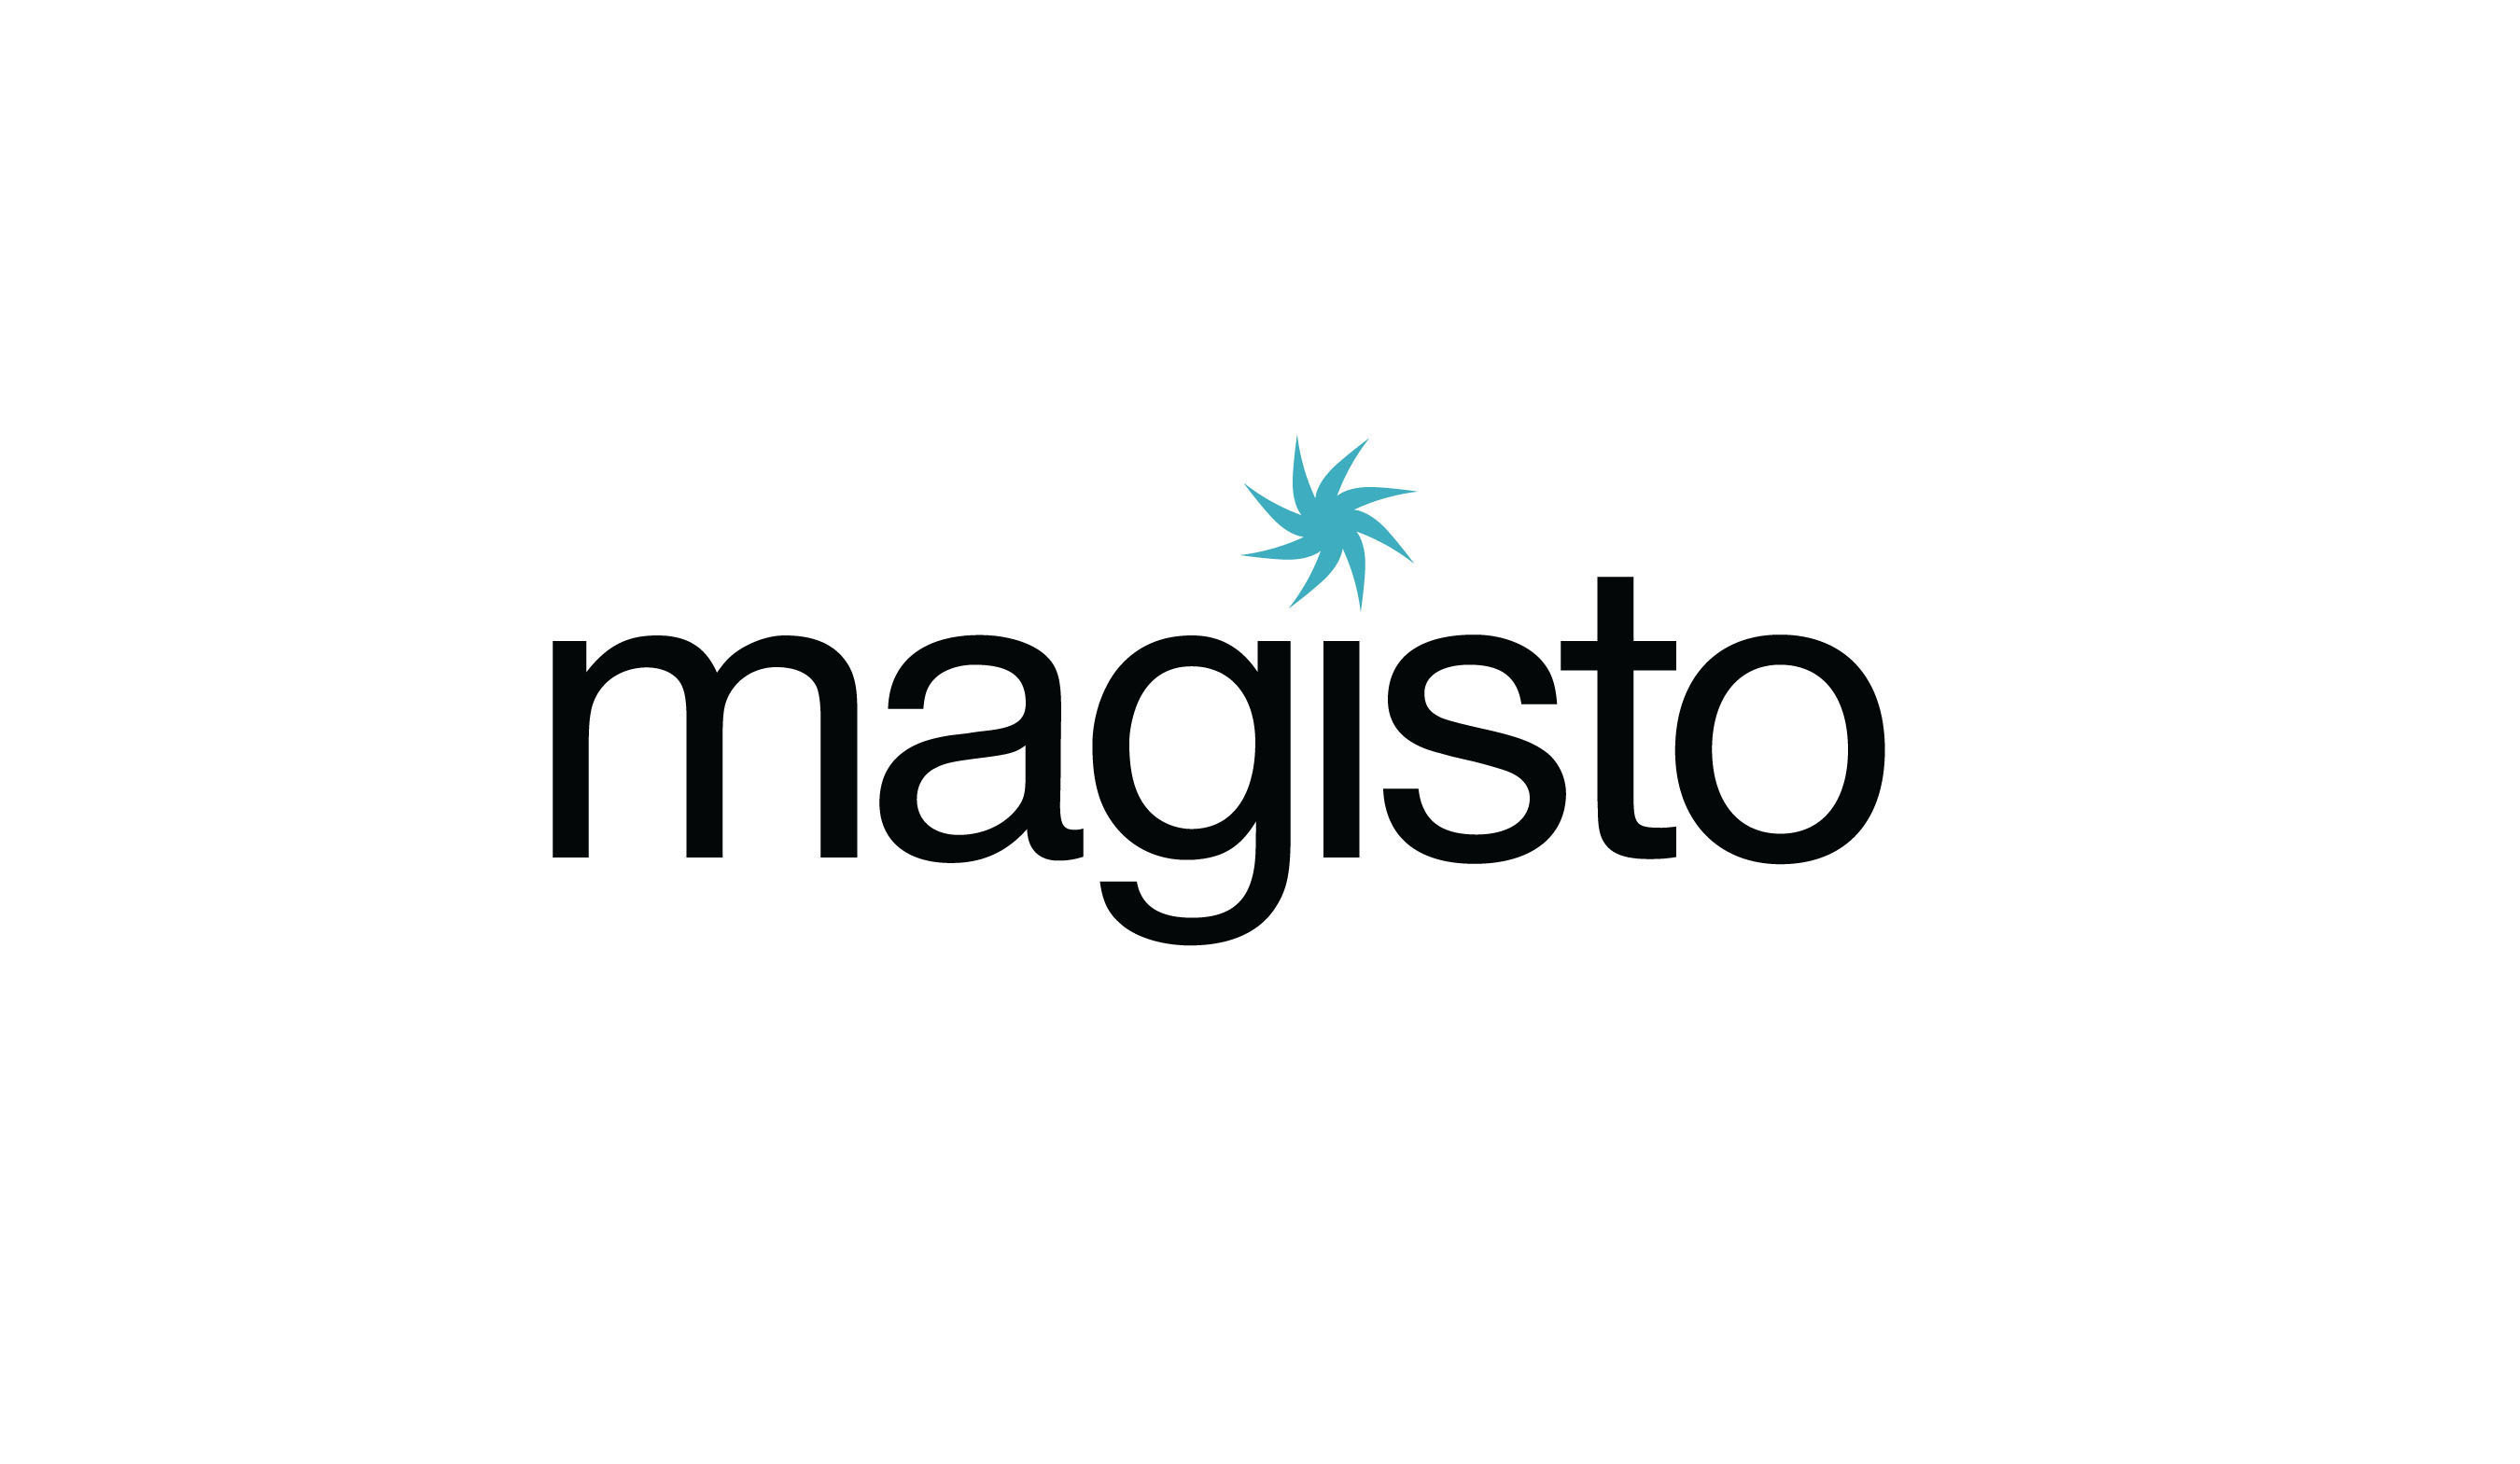 Magisto Logo. (PRNewsFoto/Magisto) (PRNewsFoto/MAGISTO)